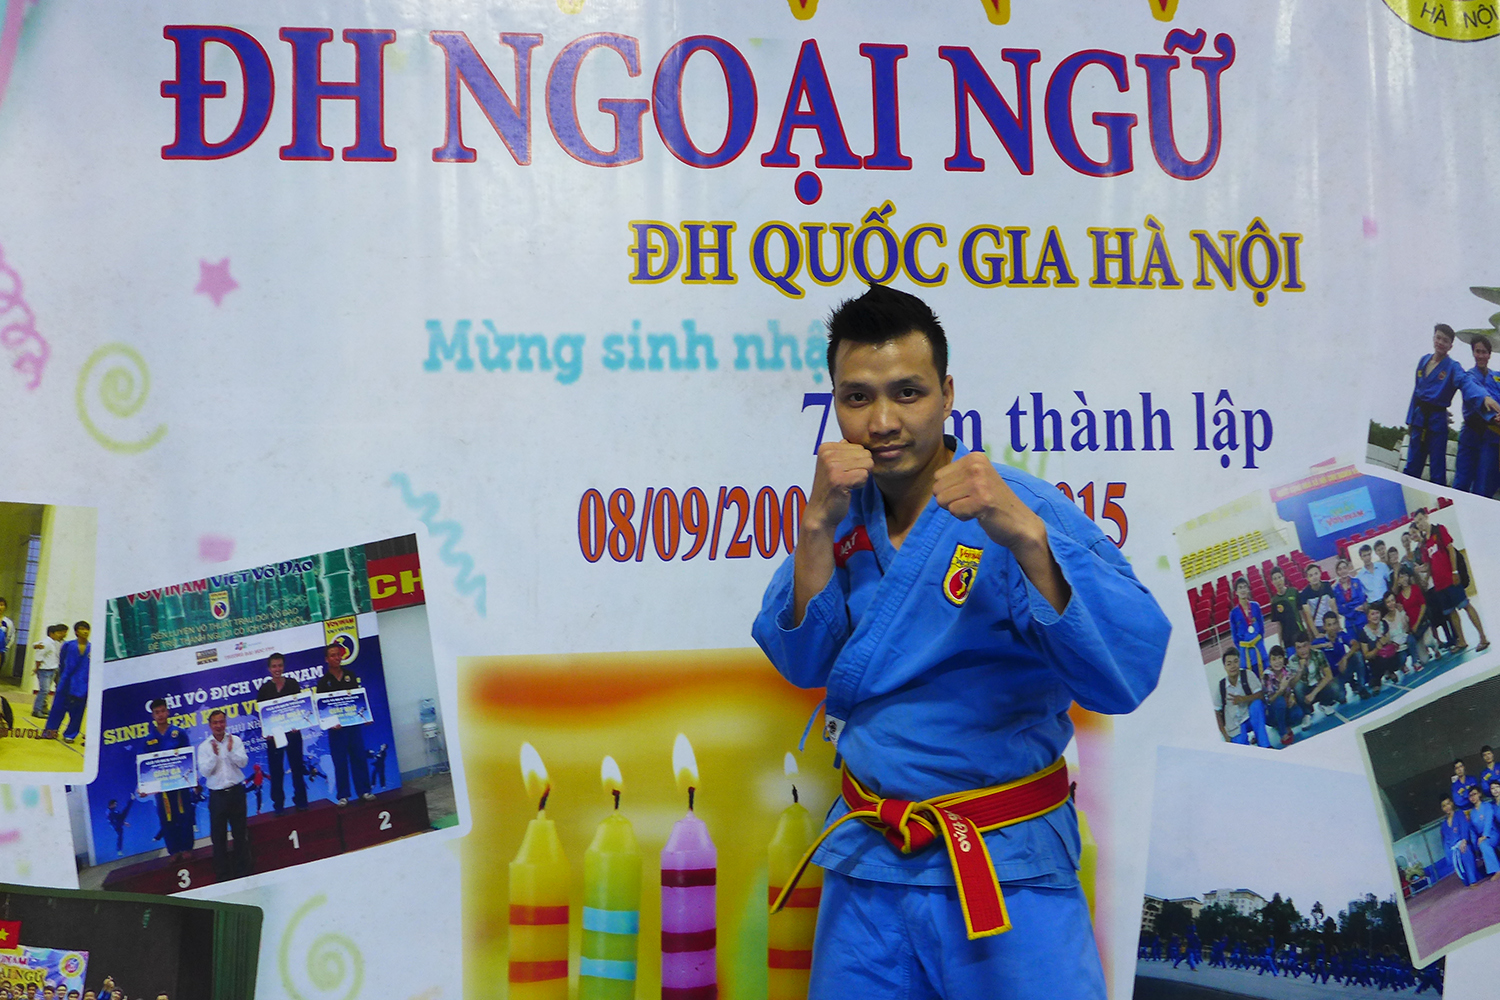 Dat est né en 1986. C’est un champion de Viet Vo Da Ho reconnu au Vietnam.